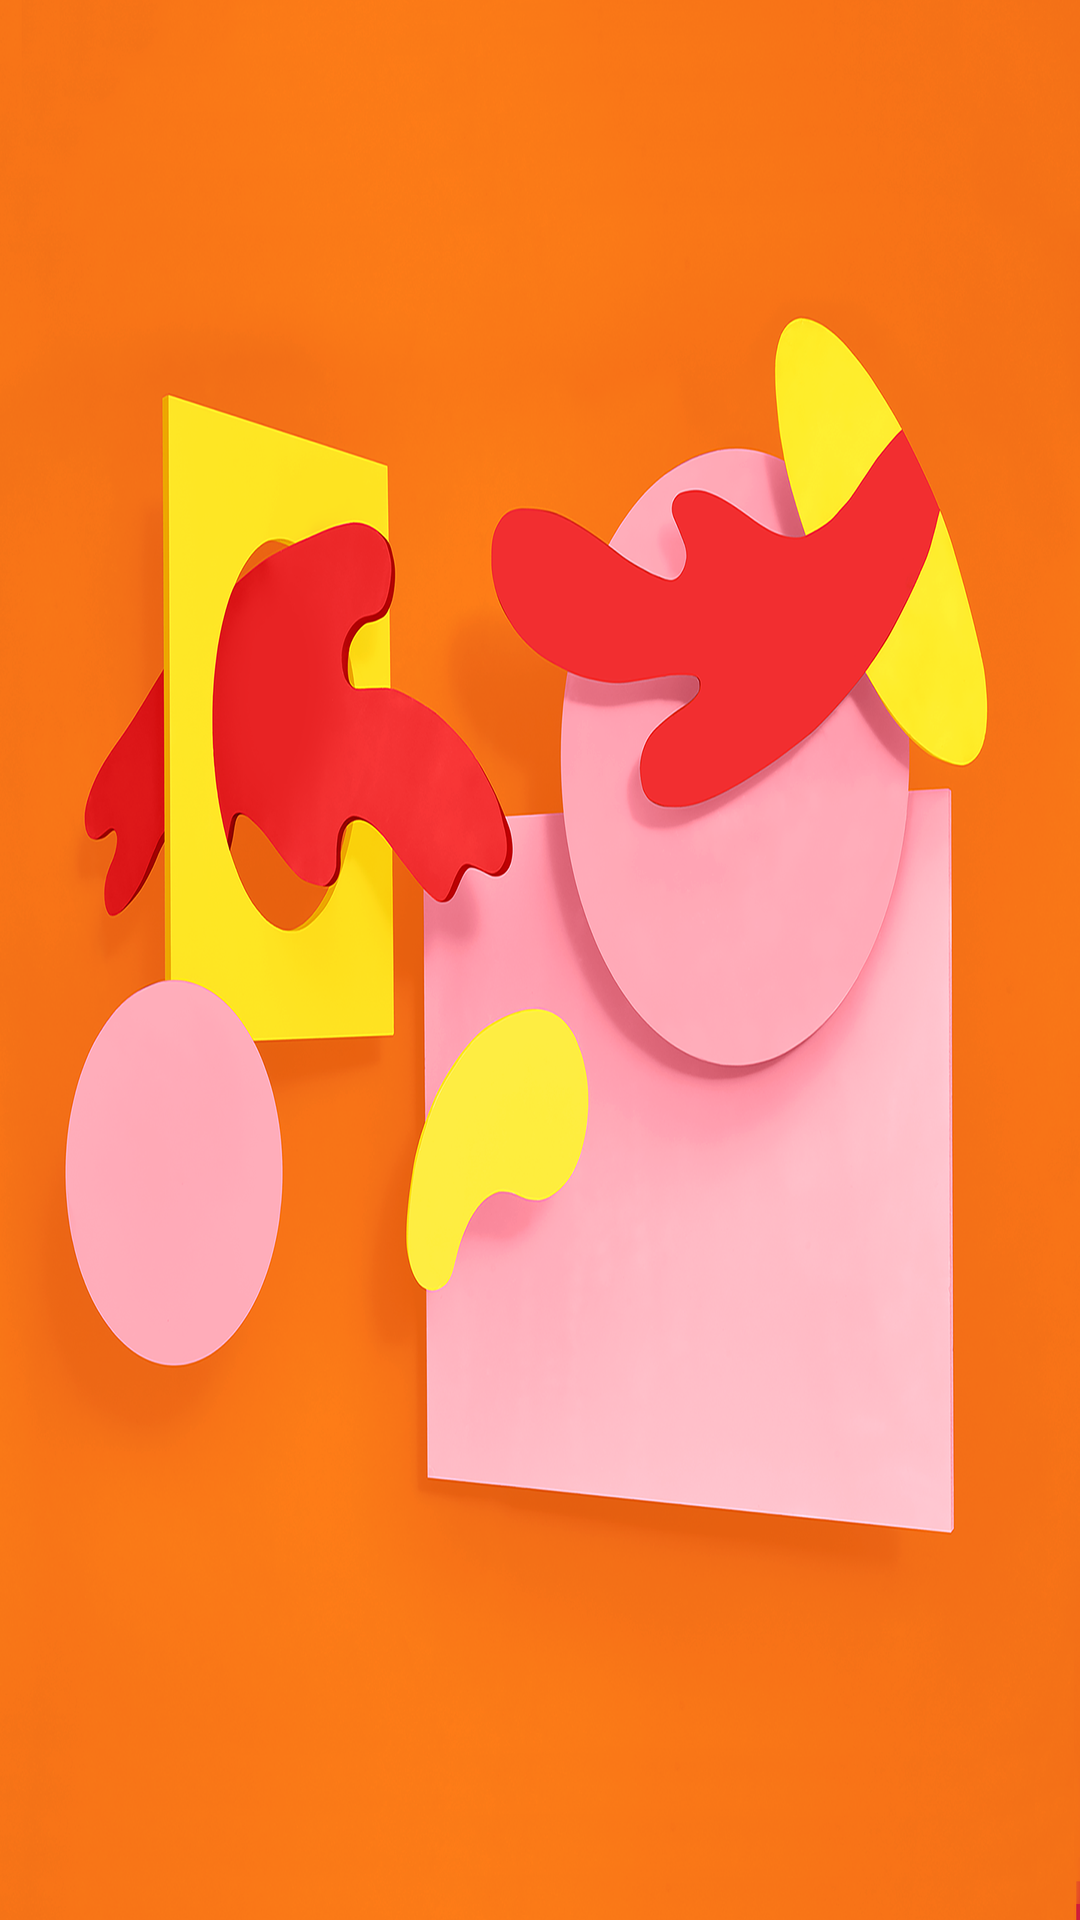 공식 안드로이드 배경 화면,분홍,노랑,주황색,건축 용지,삽화